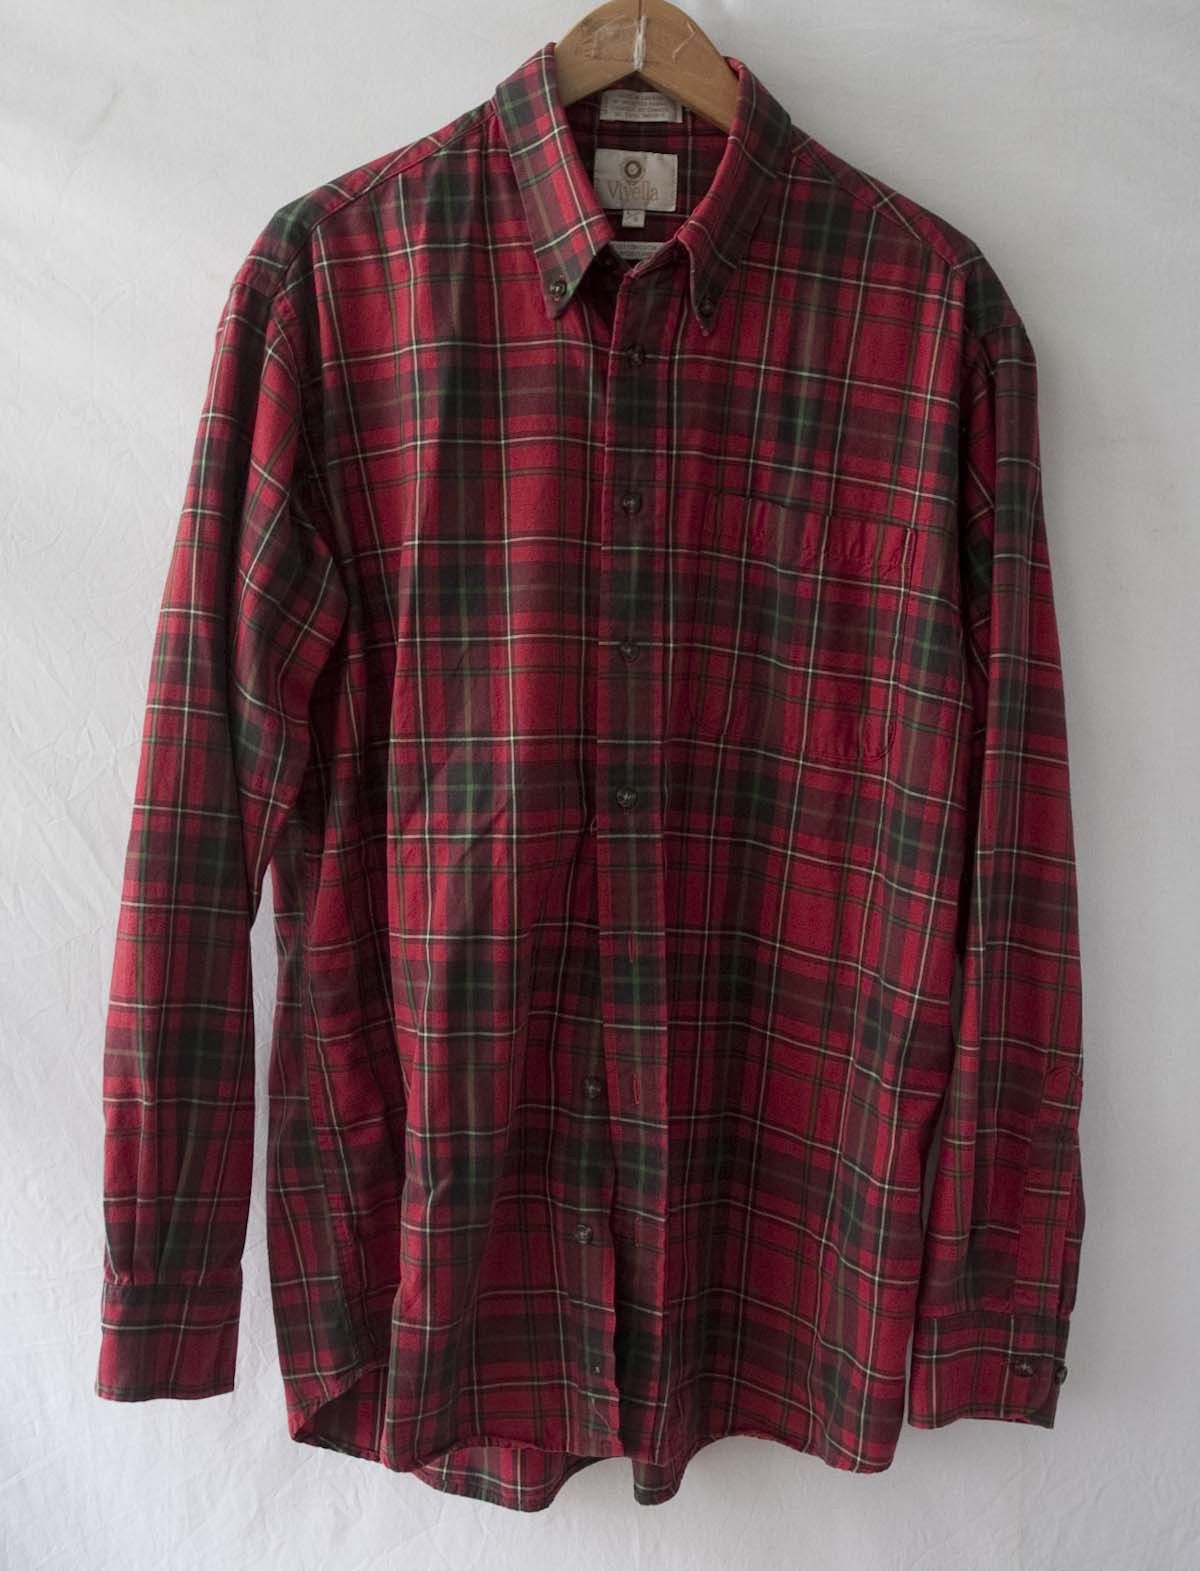 Viyella Viyella Shirt Flannel Red Plaid Made in Canada Size L | Grailed